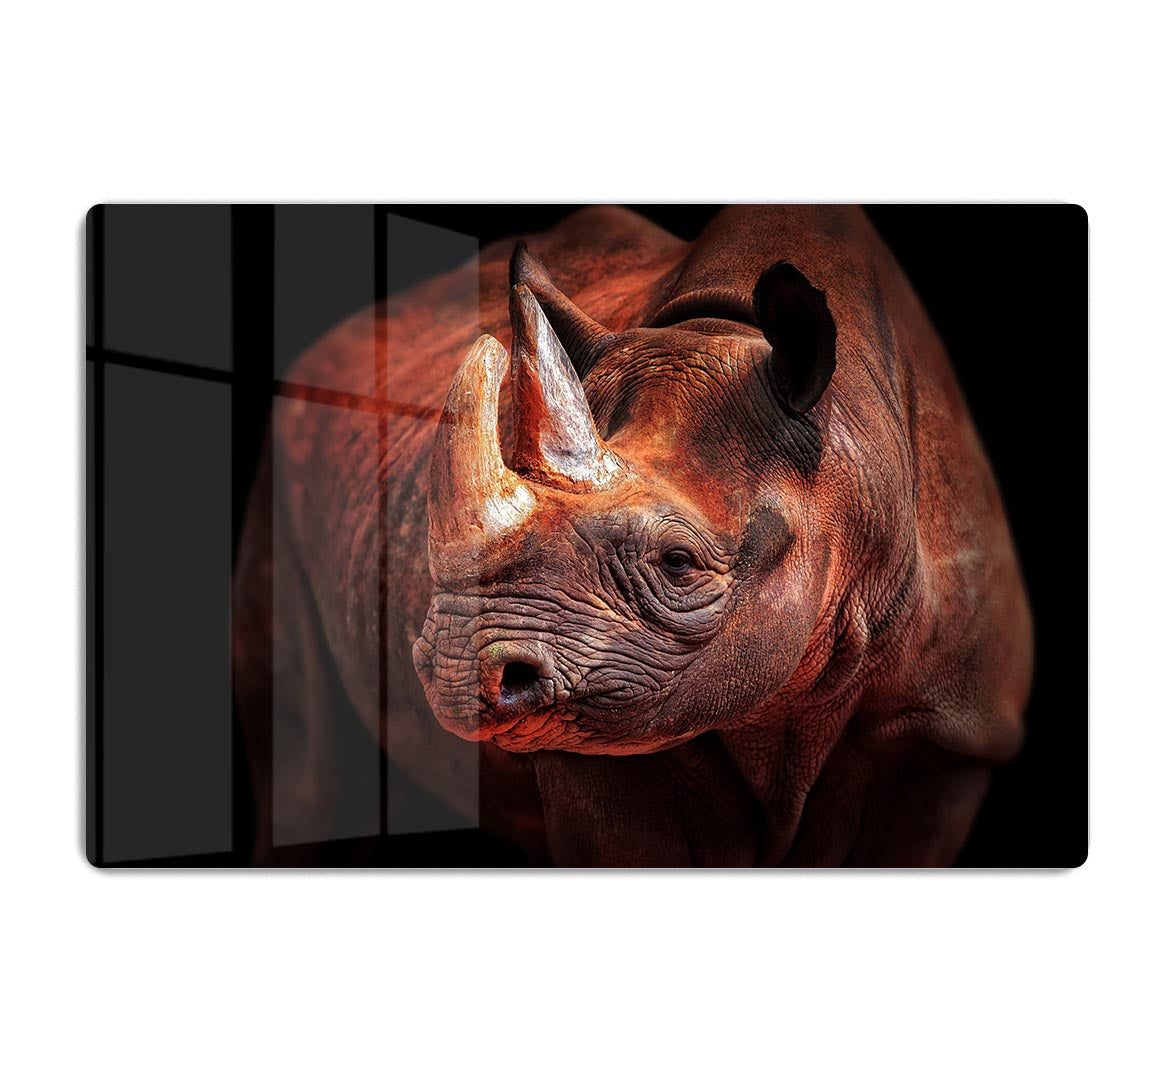 Rhino Posing HD Metal Print - Canvas Art Rocks - 1